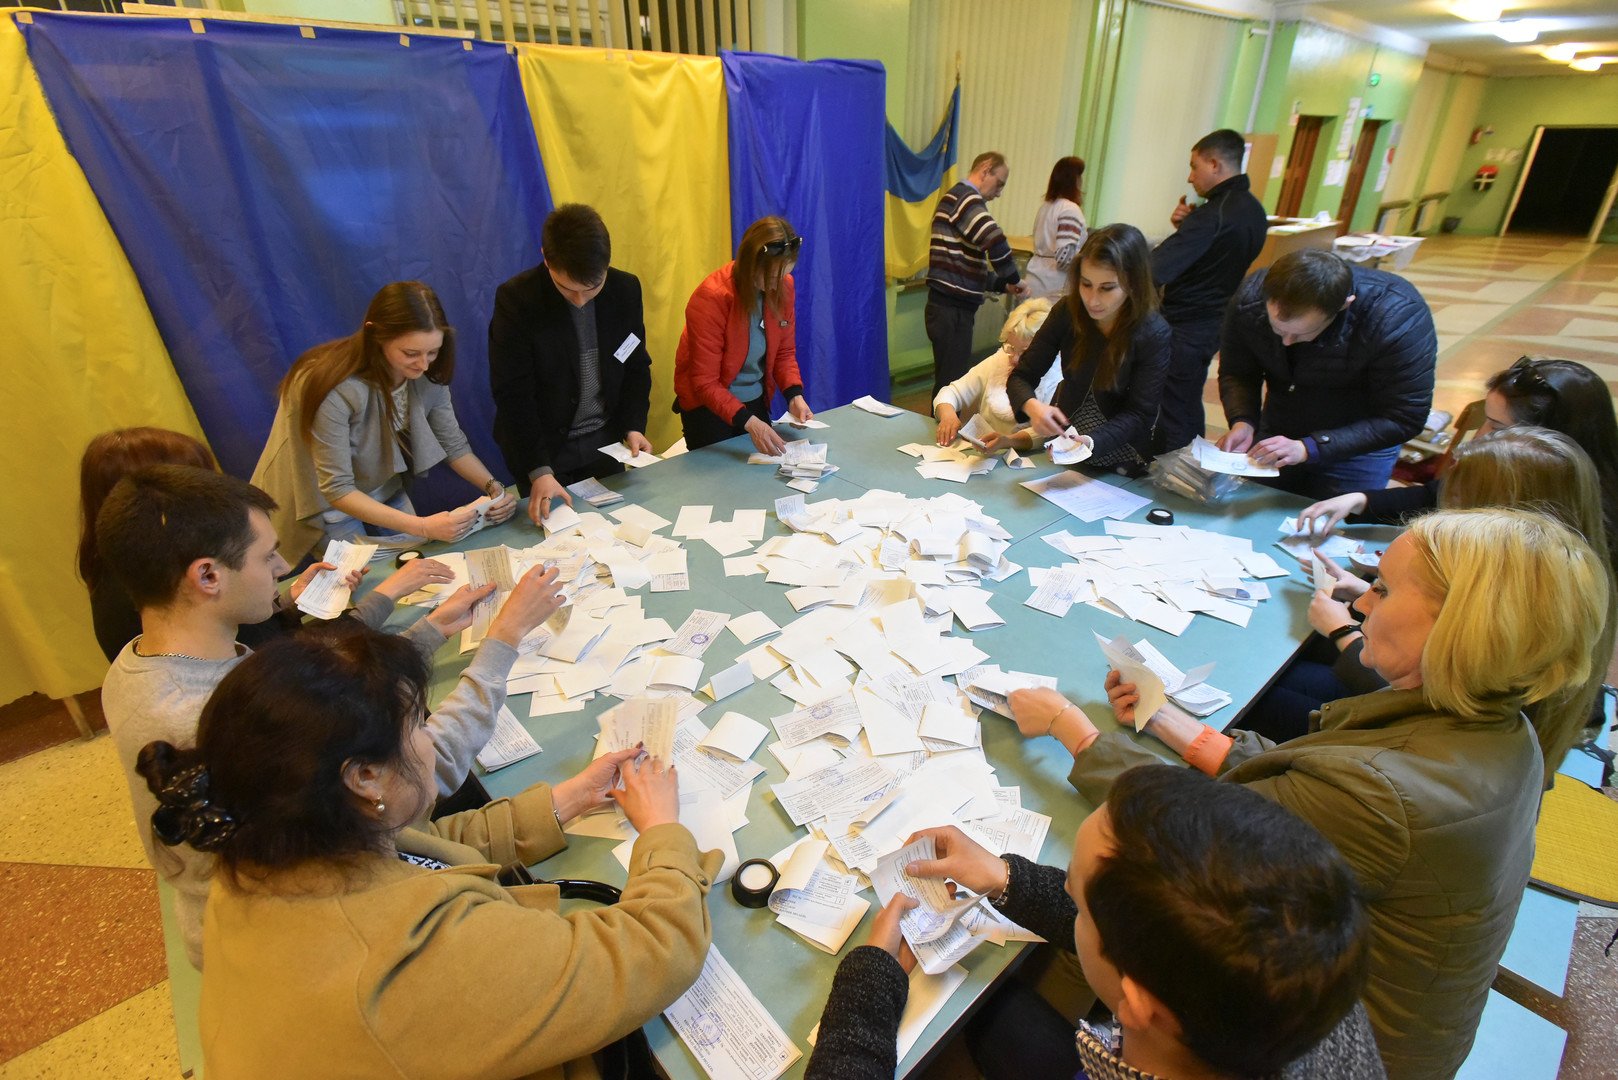 زيلينسكي حقق نتيجة لا سابق لها في تاريخ الانتخابات الرئاسية في أوكرانيا